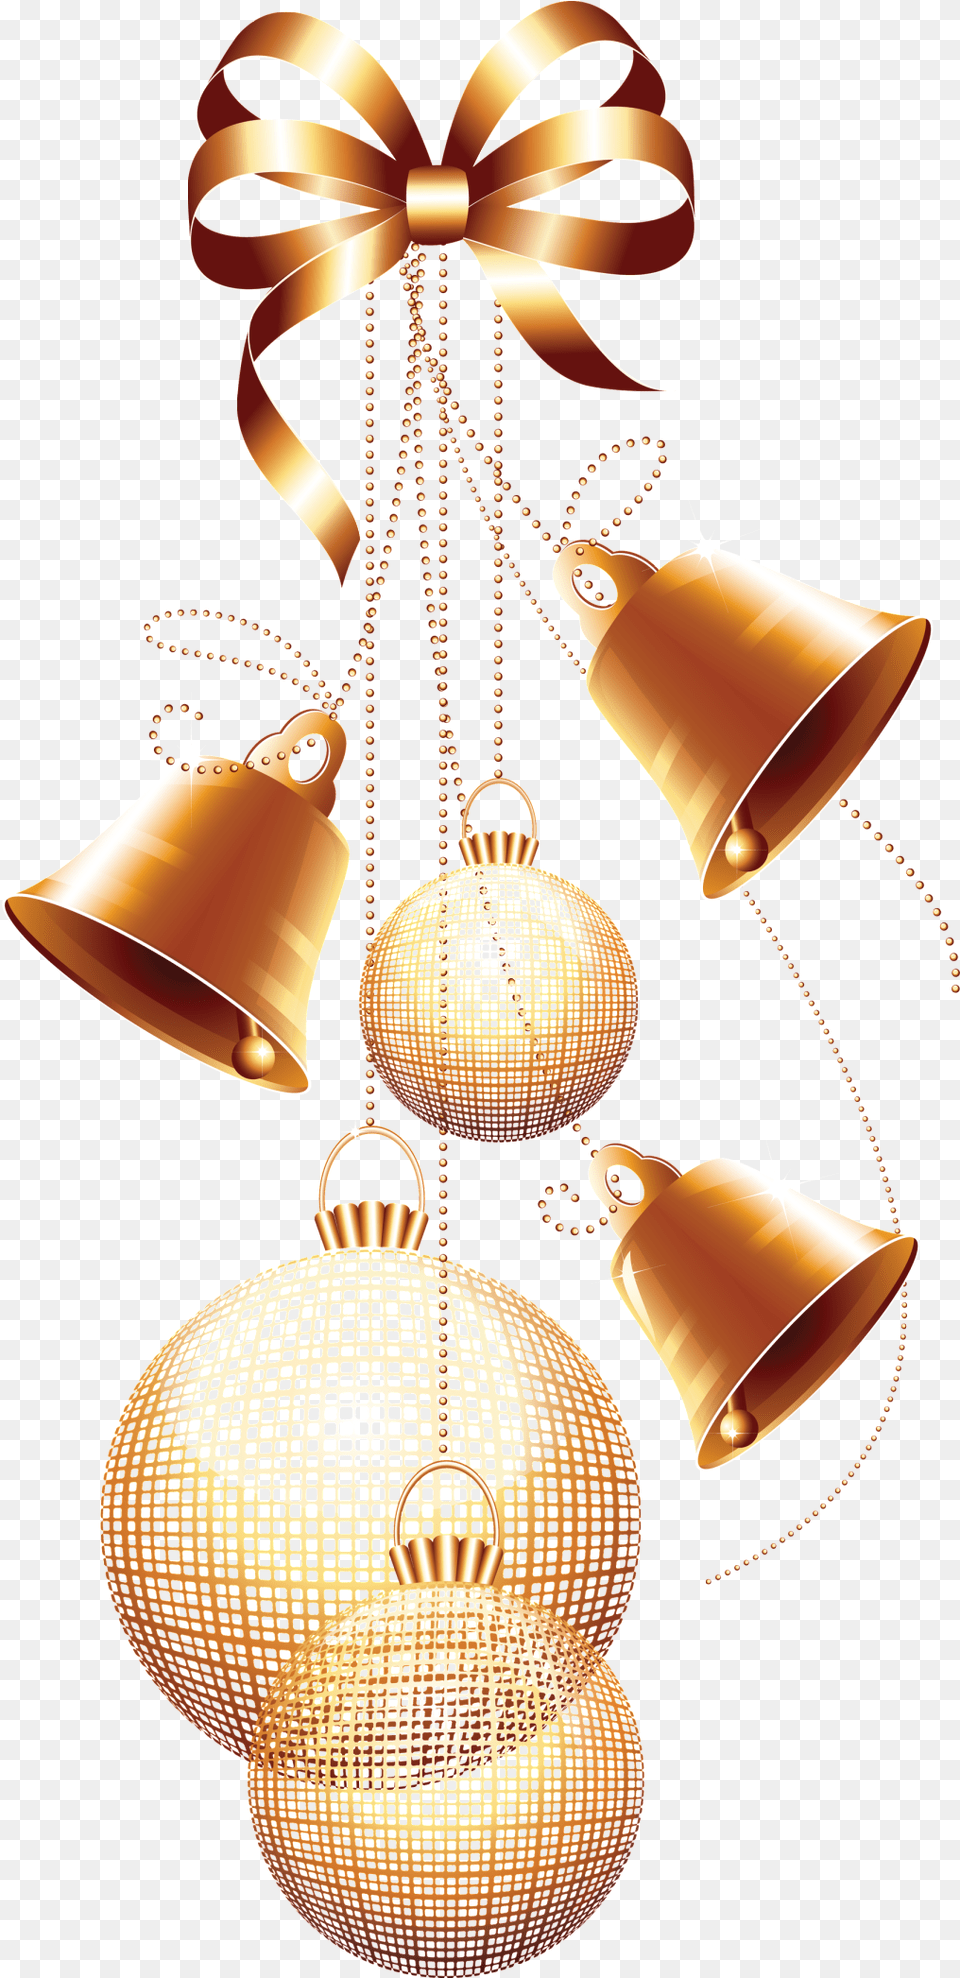 Golden Christmas Ornaments Transparent Decorative Cloches Et Boules Noel, Lamp, Chandelier Free Png